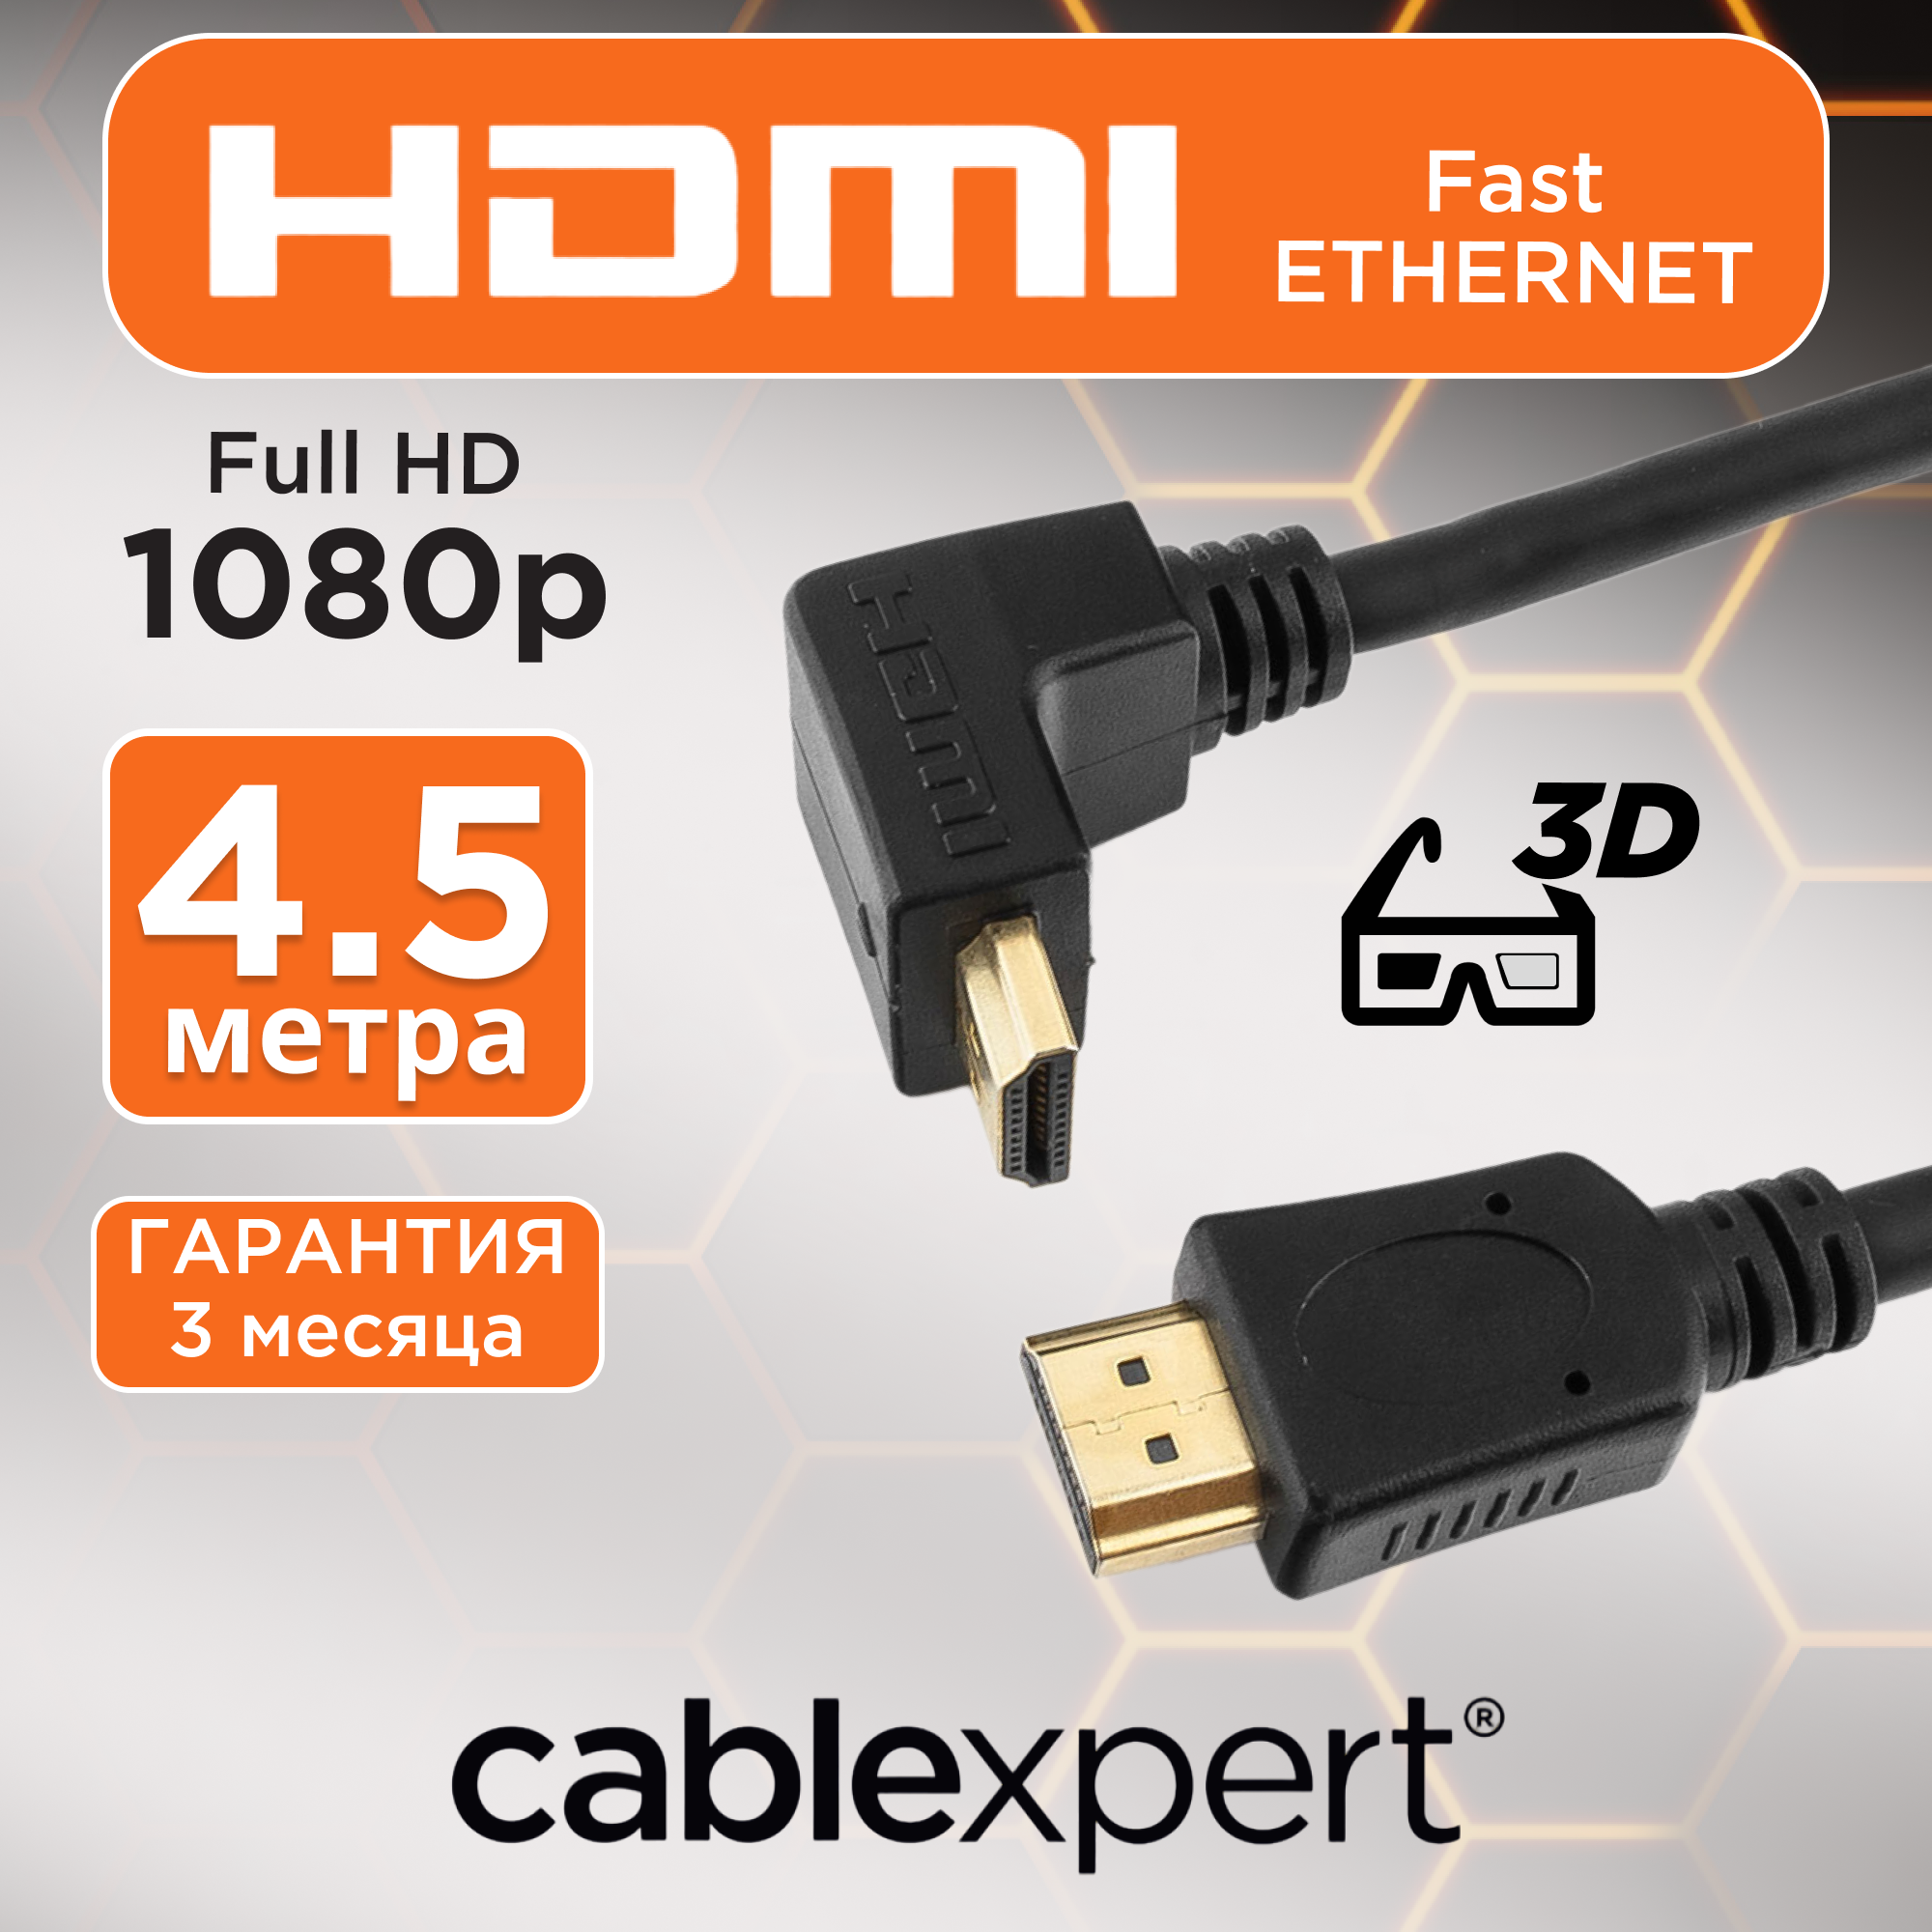 Кабель HDMI Cablexpert CC-HDMI490-15, v1.4, 19M/19M, 4.5 м, позолоченный разъем, экран, черный